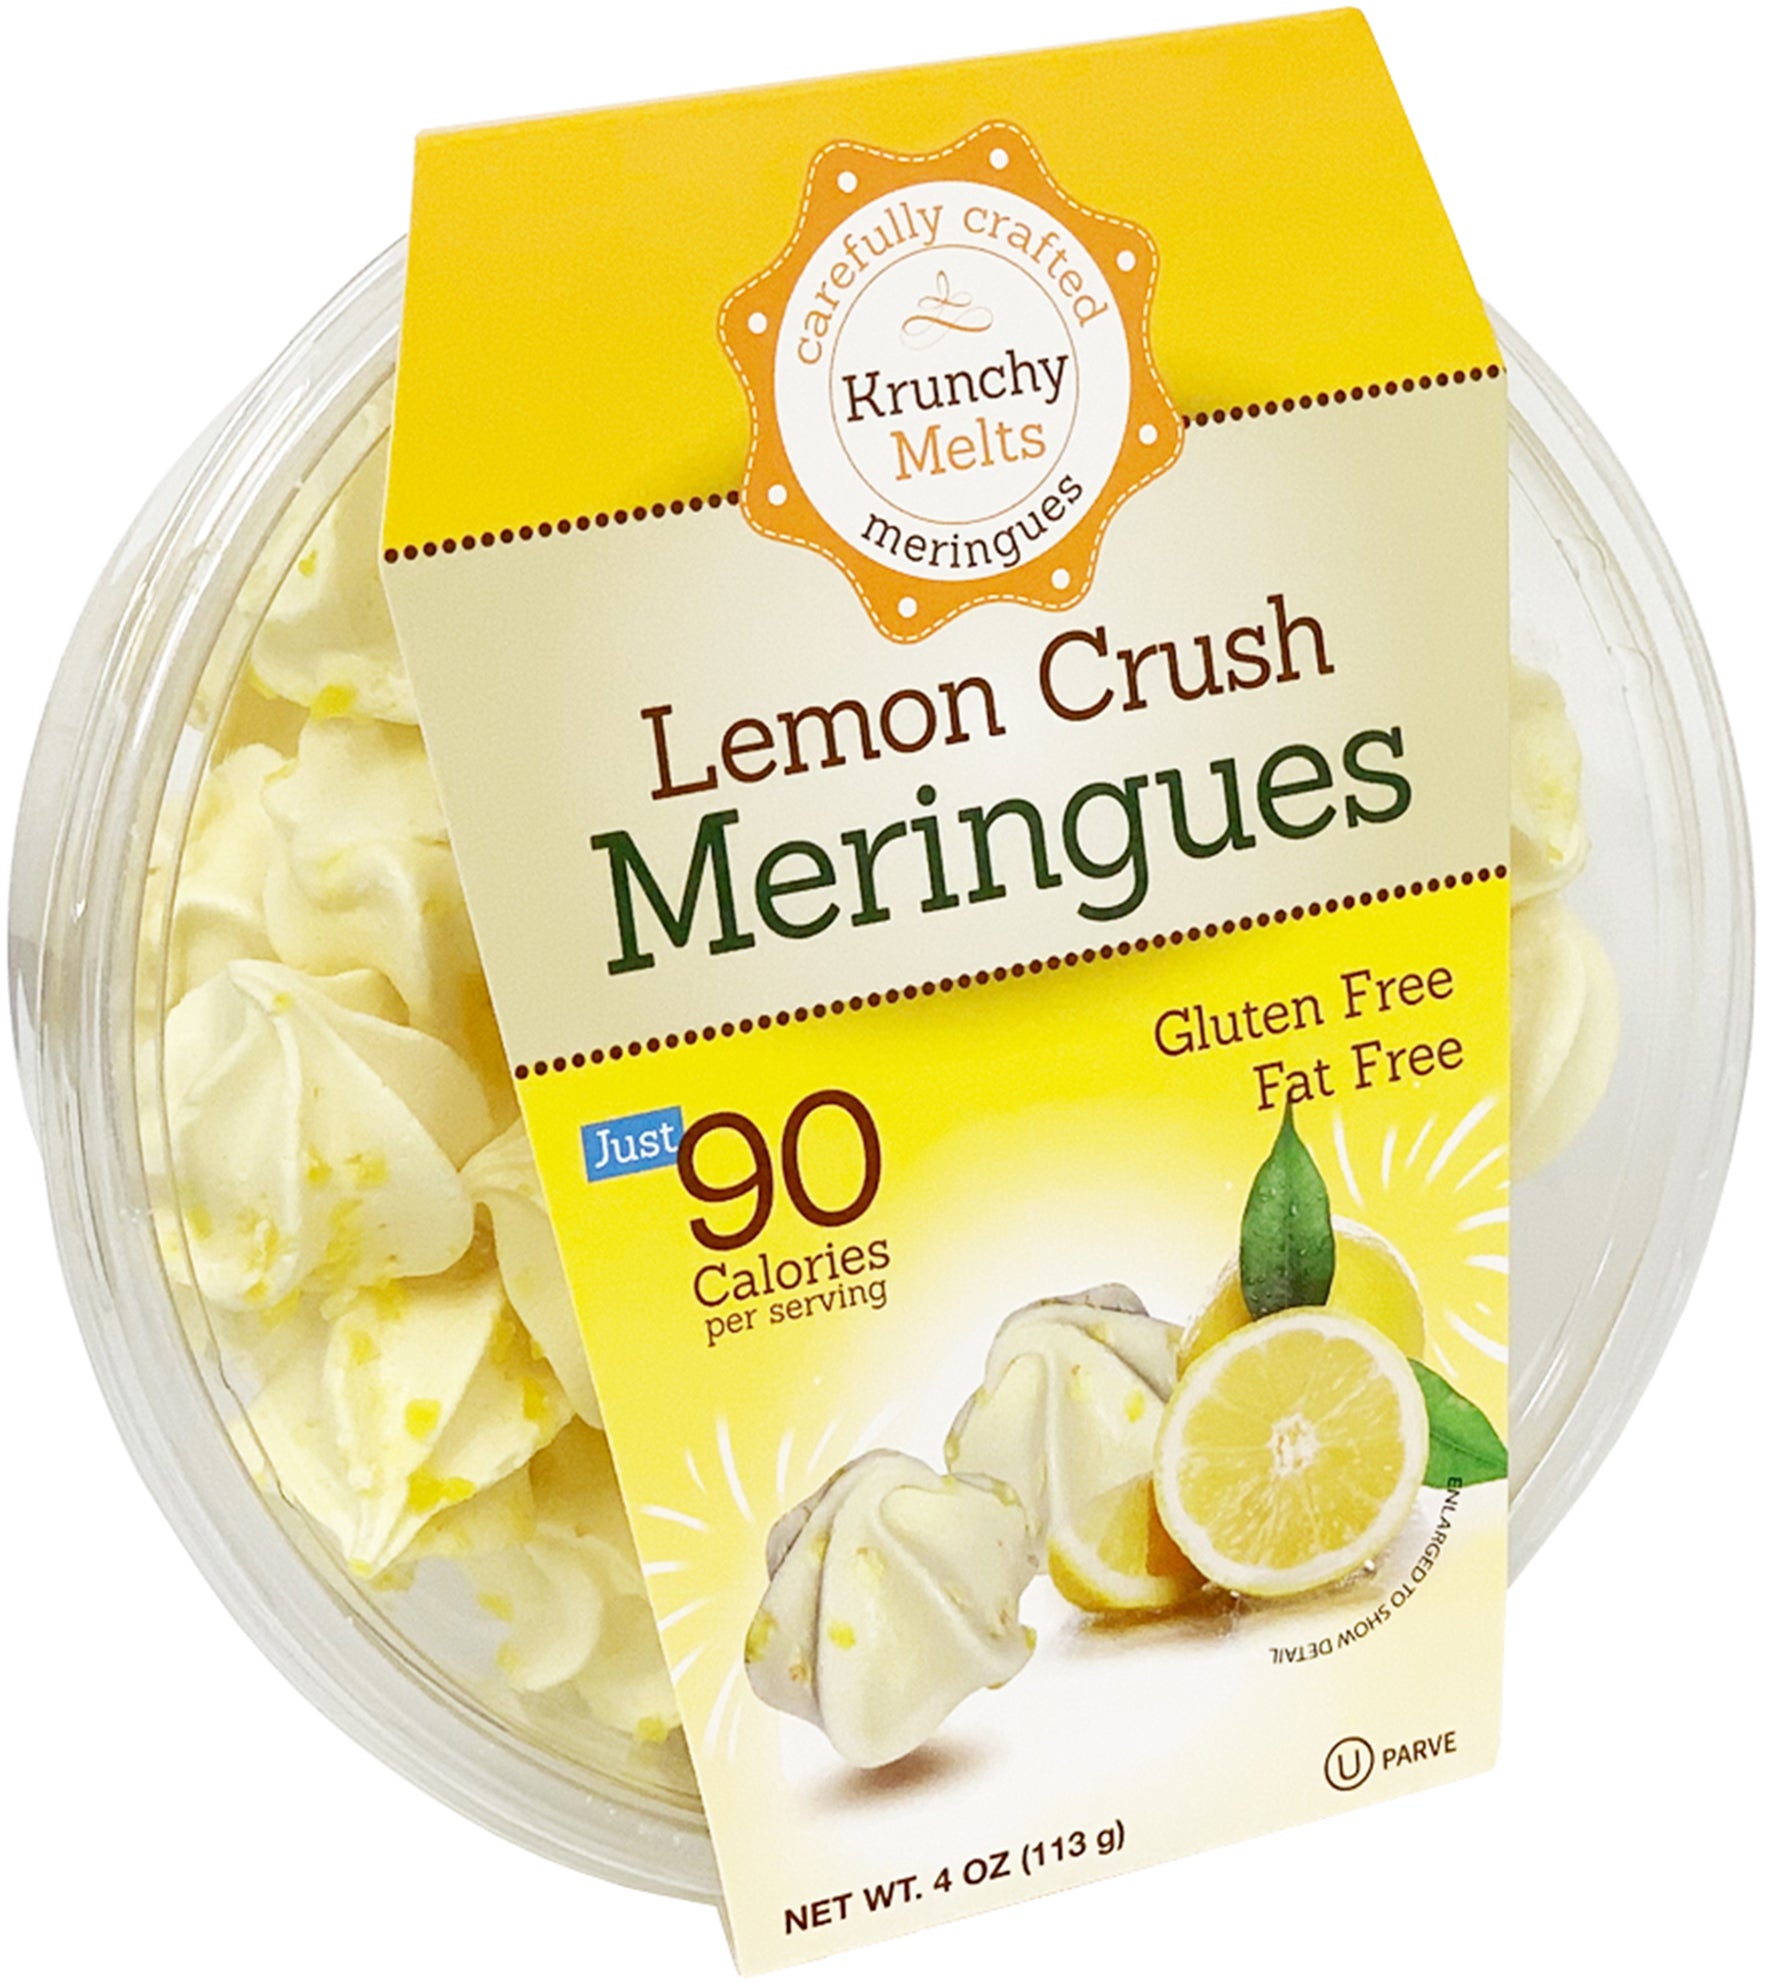 Lemon Crush